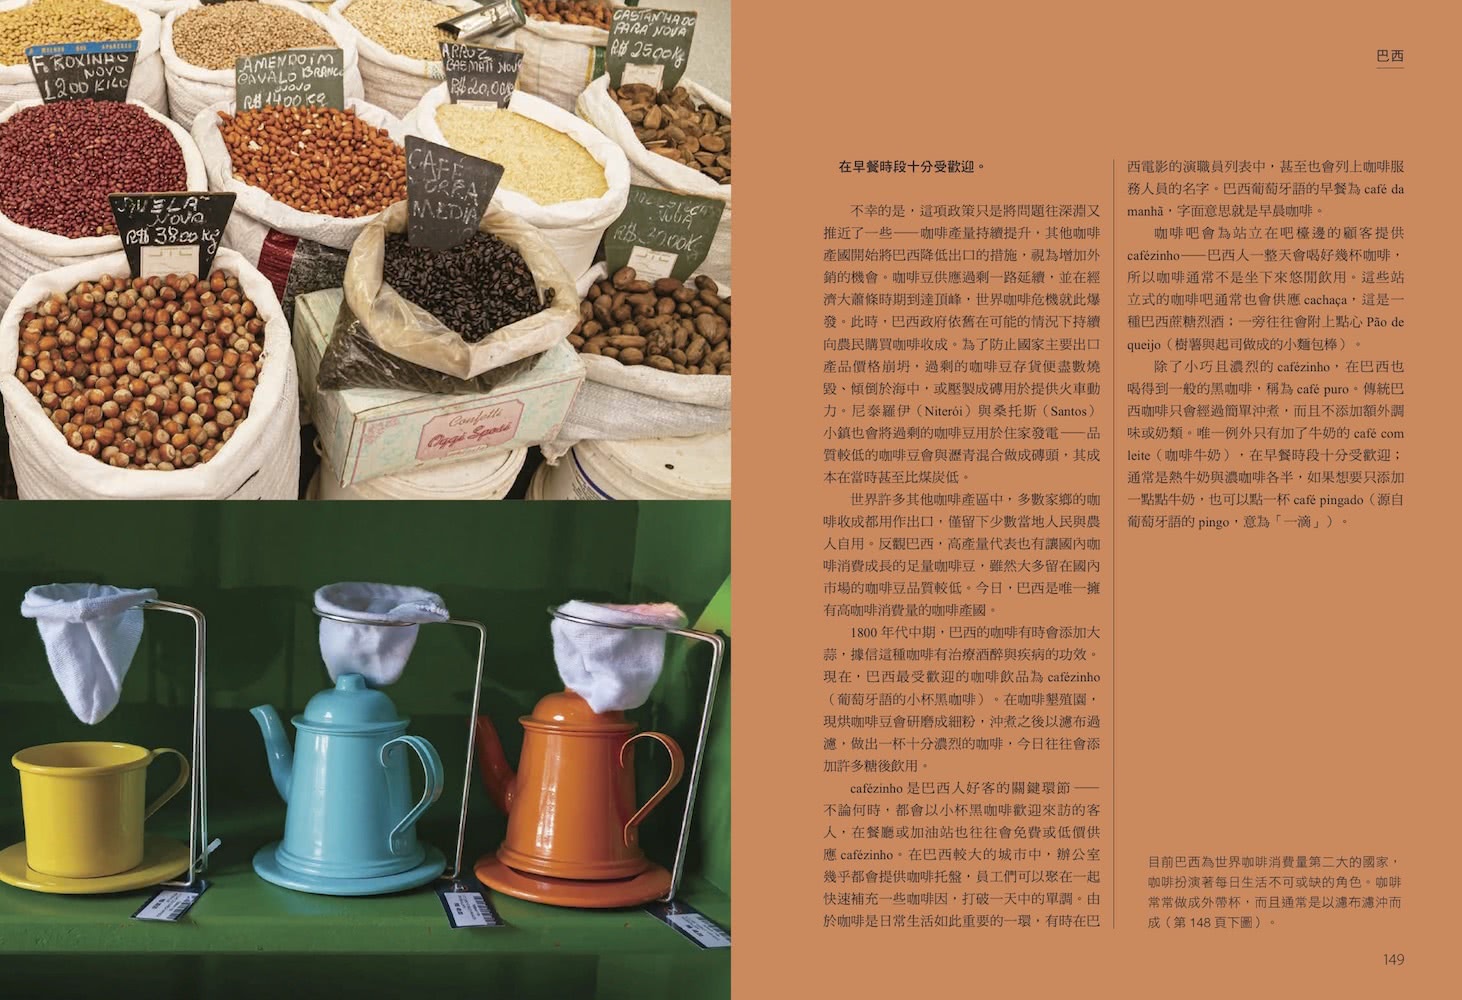 尋味．世界咖啡――跟著咖啡豆的流轉傳播，認識在地沖煮配方與品飲日常，探索全球咖啡文化風景